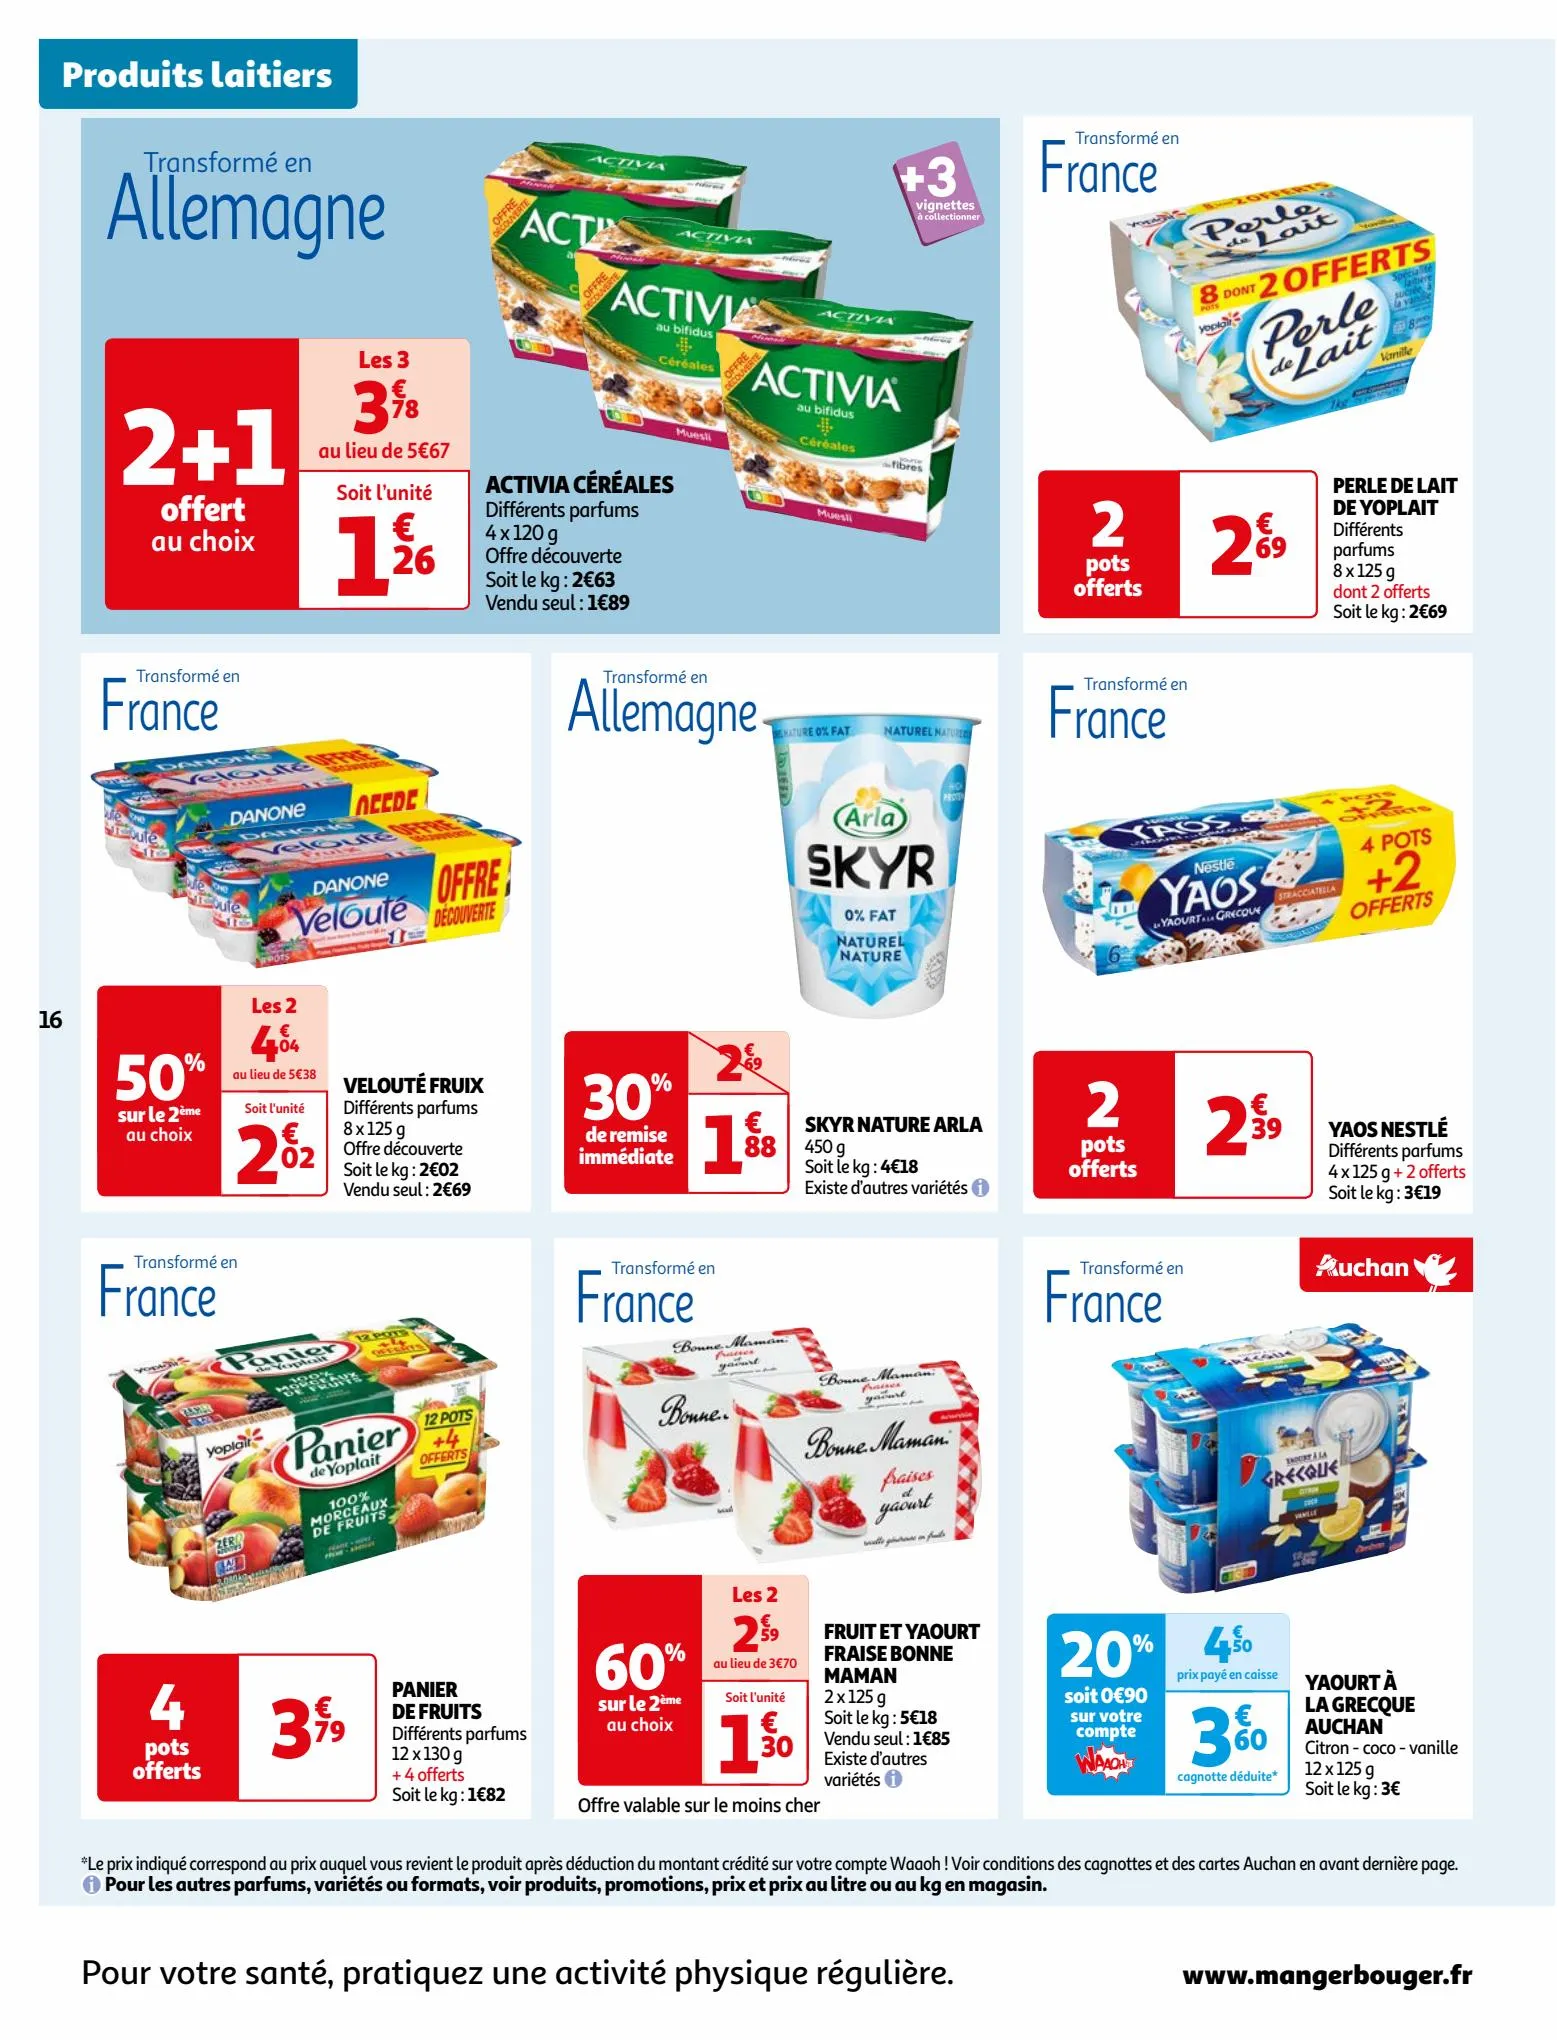 Catalogue Vos produits laitiers à petits prix !, page 00016